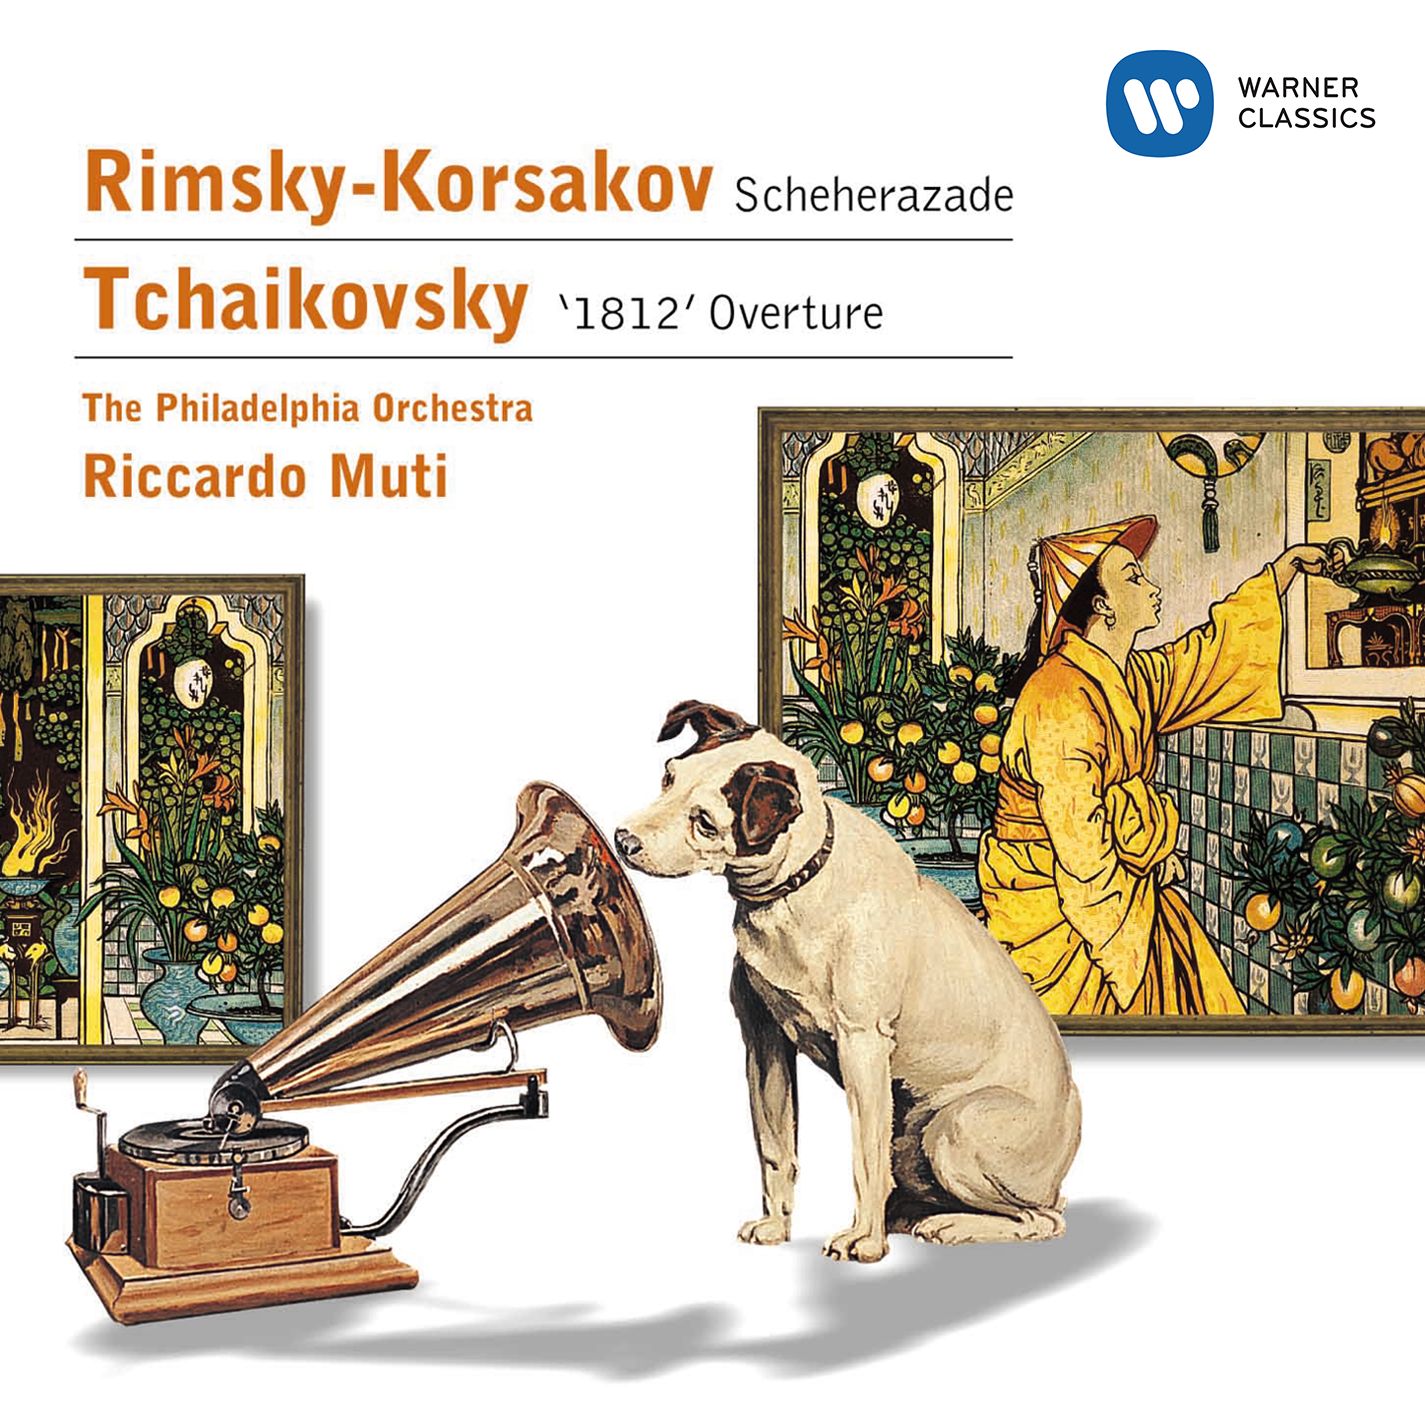 Rimsky-Korsakov: Scheherazade - Tchaikovsky: '1812' Overture